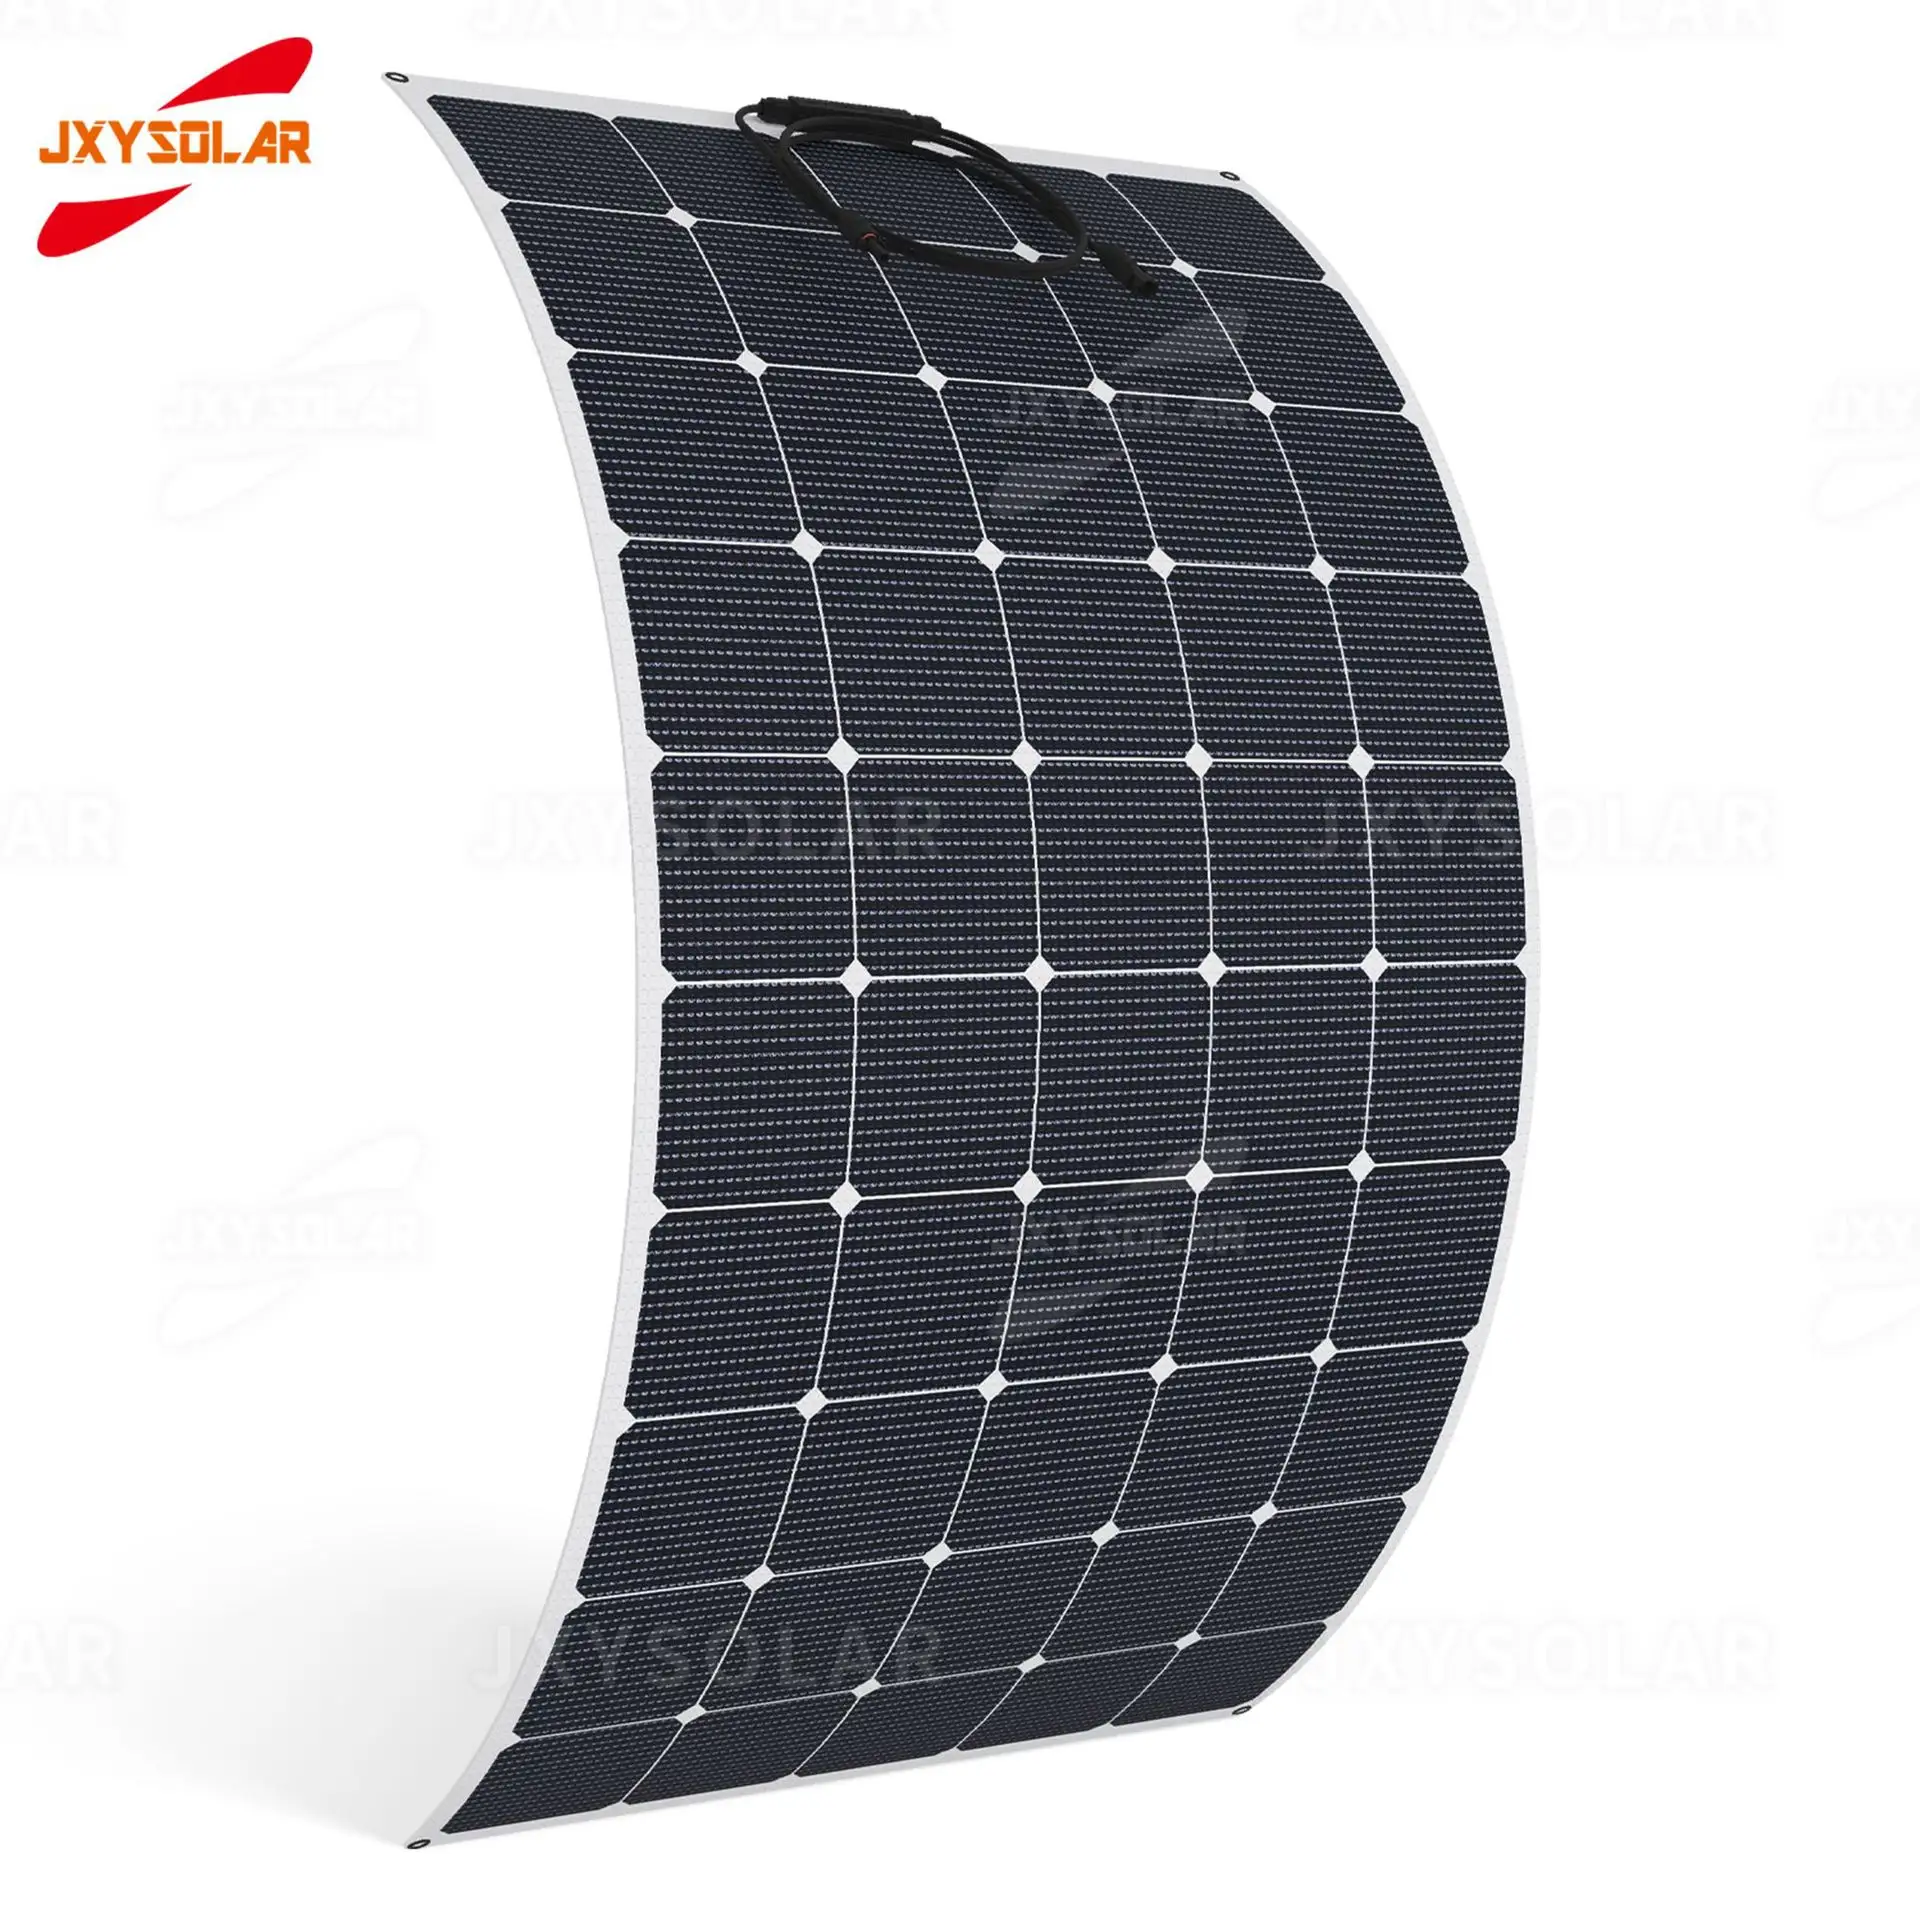 Çin fabrika 100w 380w GÜNEŞ PANELI fiyat 25 yıl garanti yumuşak esnek güneş panelleri